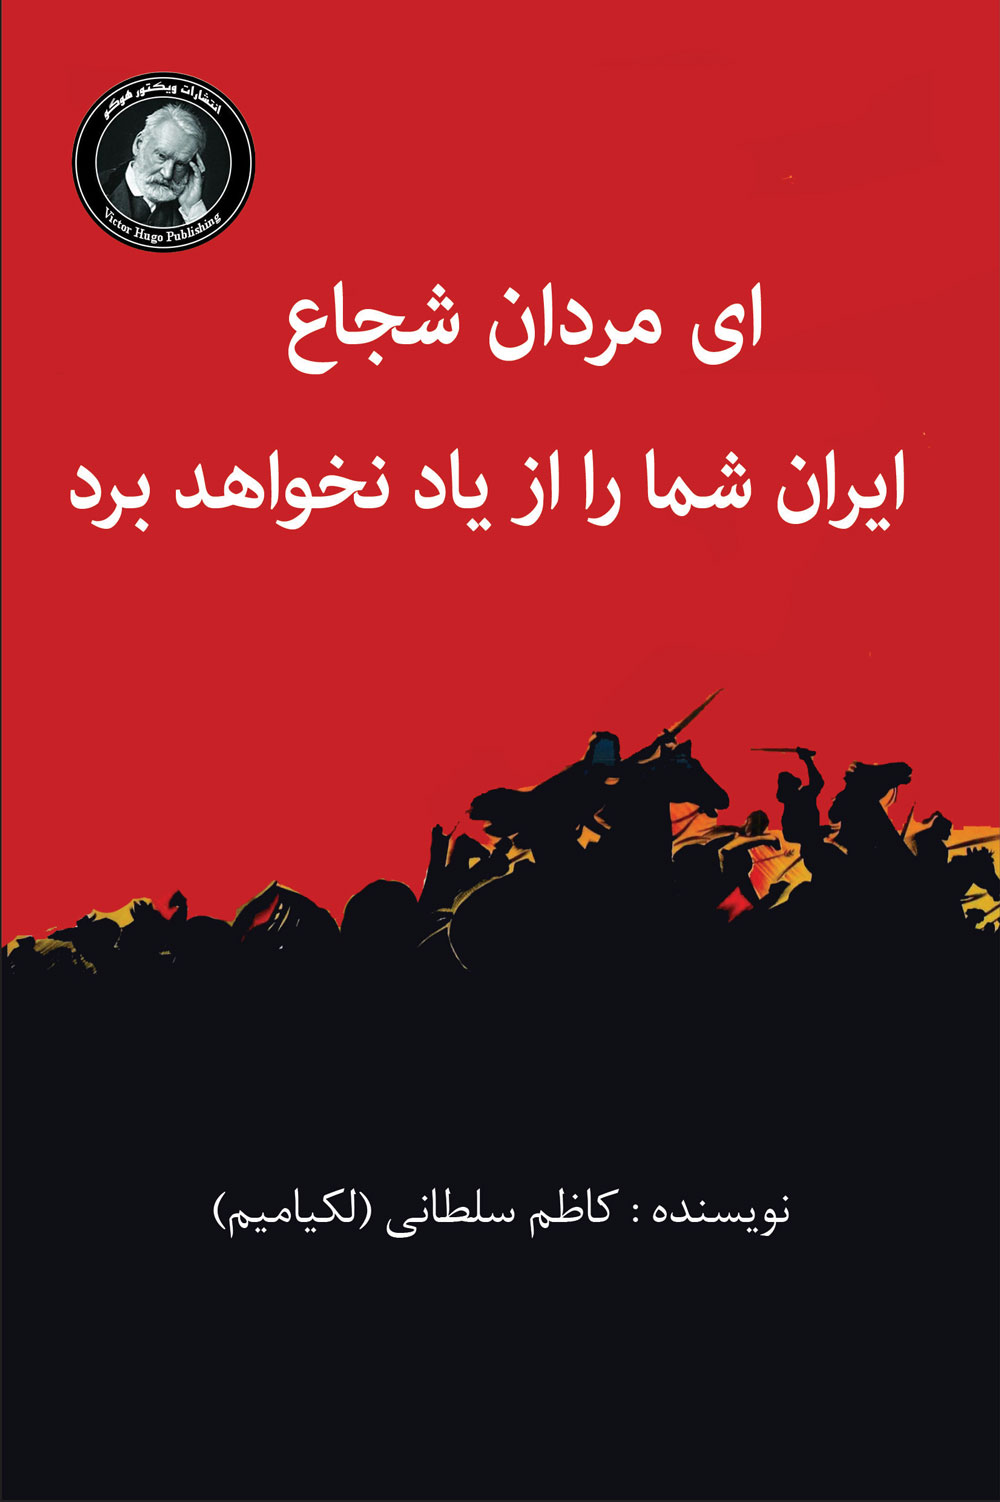  کتاب ای مردان شجاع، ایران شما را از یاد نخواهد برد